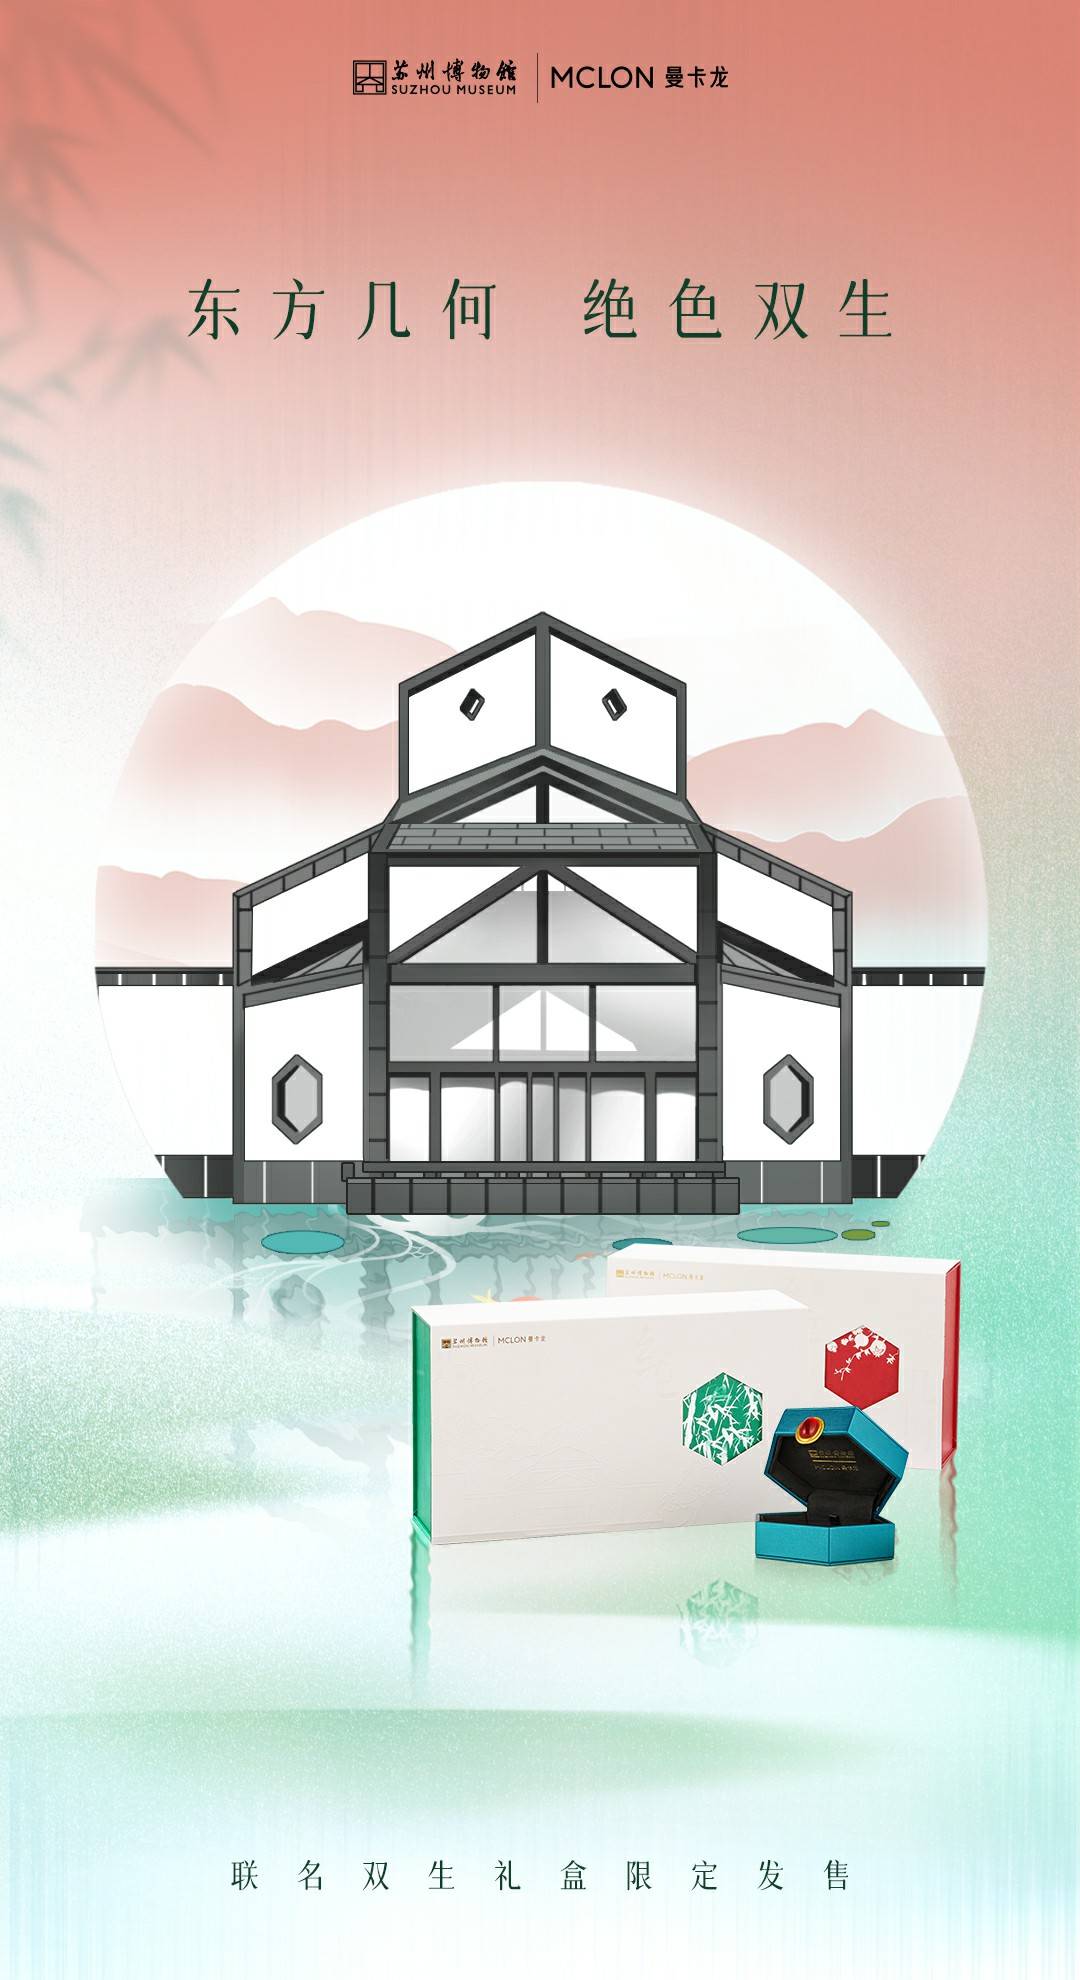 曼卡龙珠宝×苏州博物馆联名礼盒发布共同演绎东方美学新时尚 